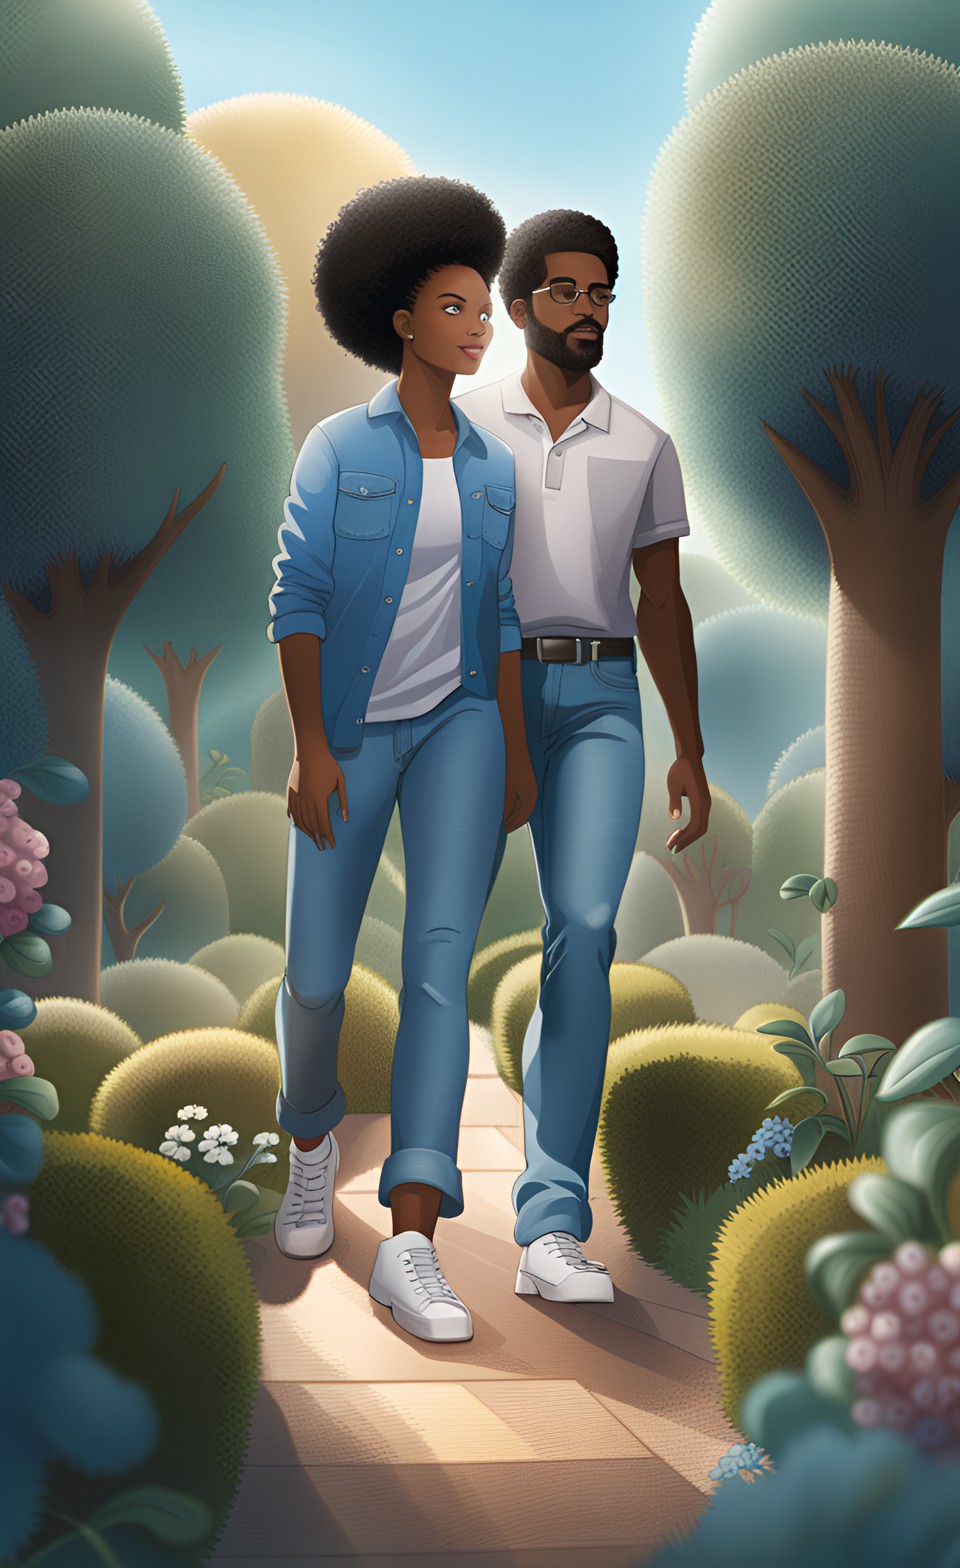 Jamaican anime couple walking in a garden Dream_14